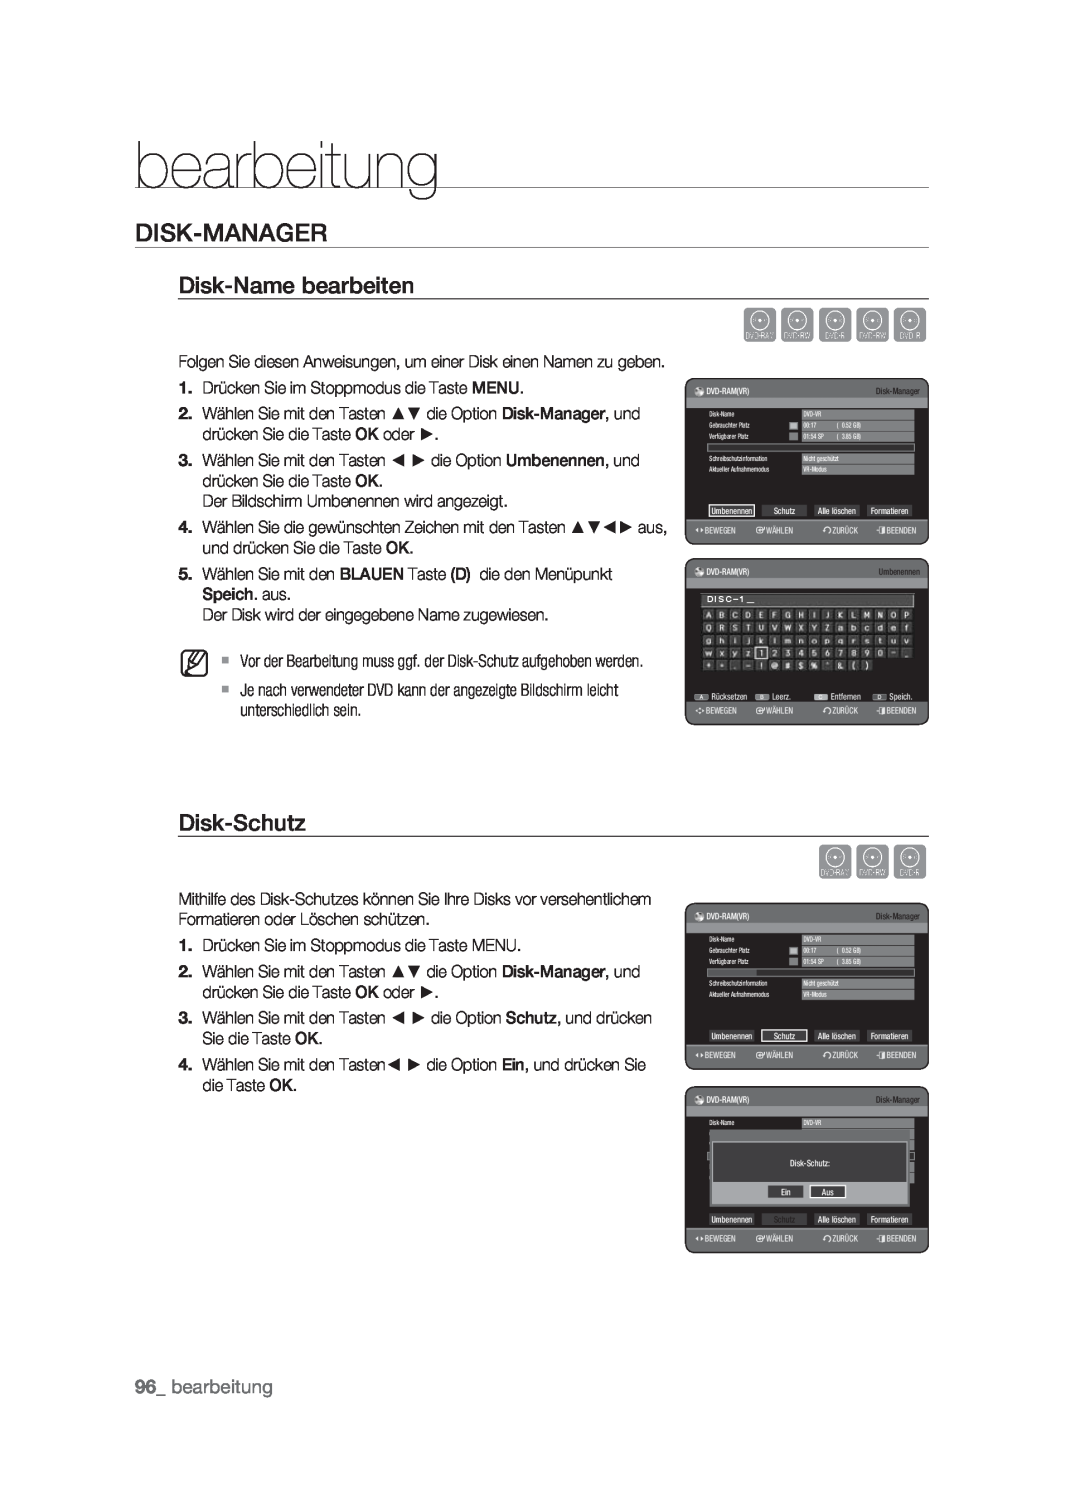 Samsung DVD-HR773/XEN, DVD-HR773/XEB, DVD-HR773/XEG Xcvkl, Disk-Manager, Disk-Name bearbeiten, Disk-Schutz, bearbeitung 